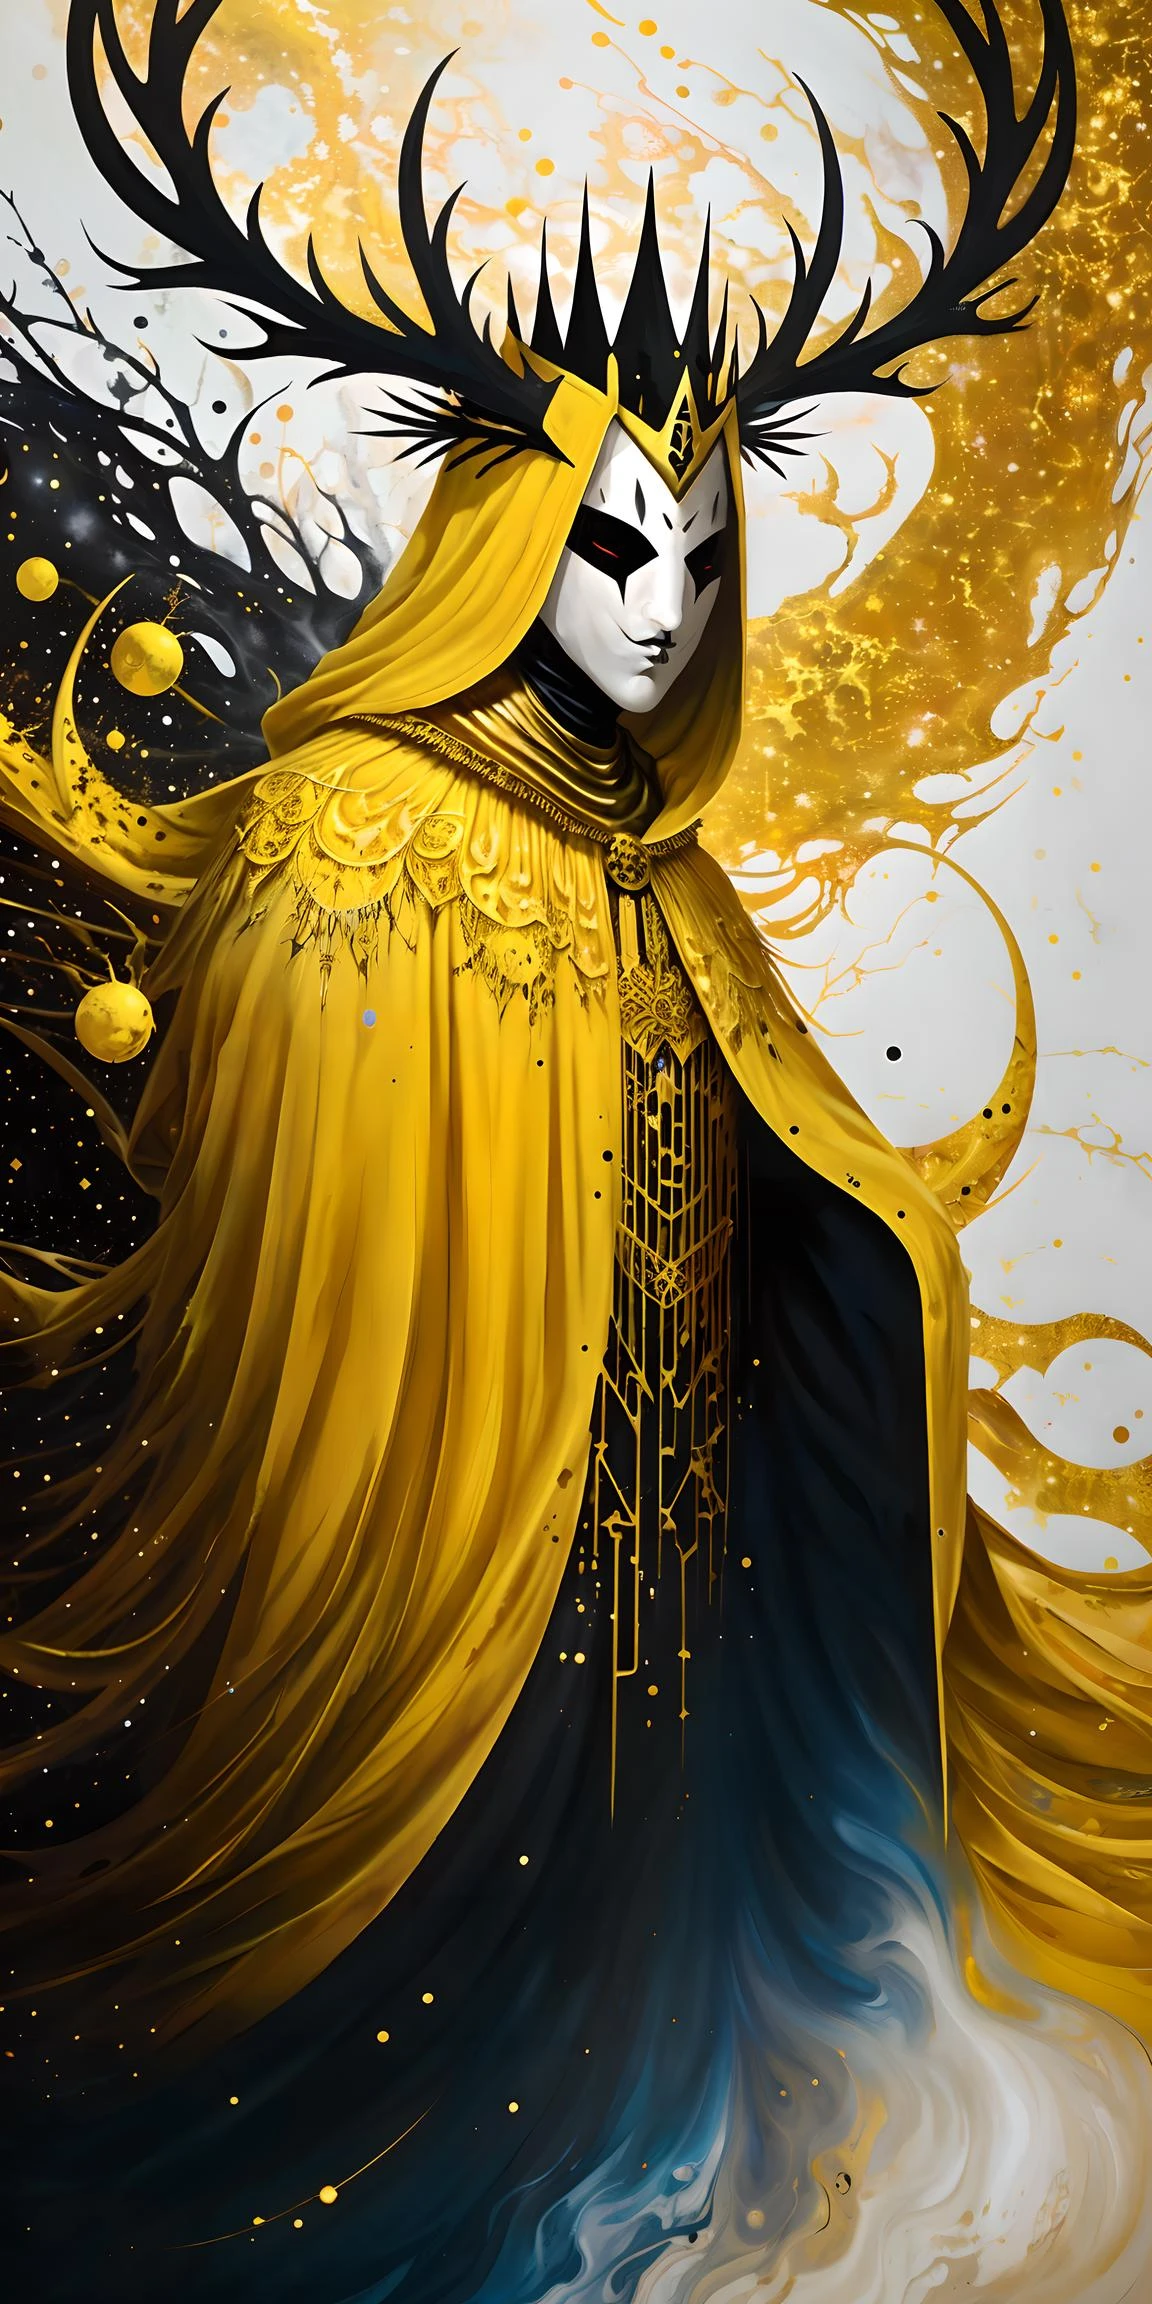 сюрреалистическая картина с брызгами краски, изображающая желтого короля в плаще и маске, рога, корона, космический фон, золотисто-бело-черная цветовая гамма, (абстрактный:1.2) 